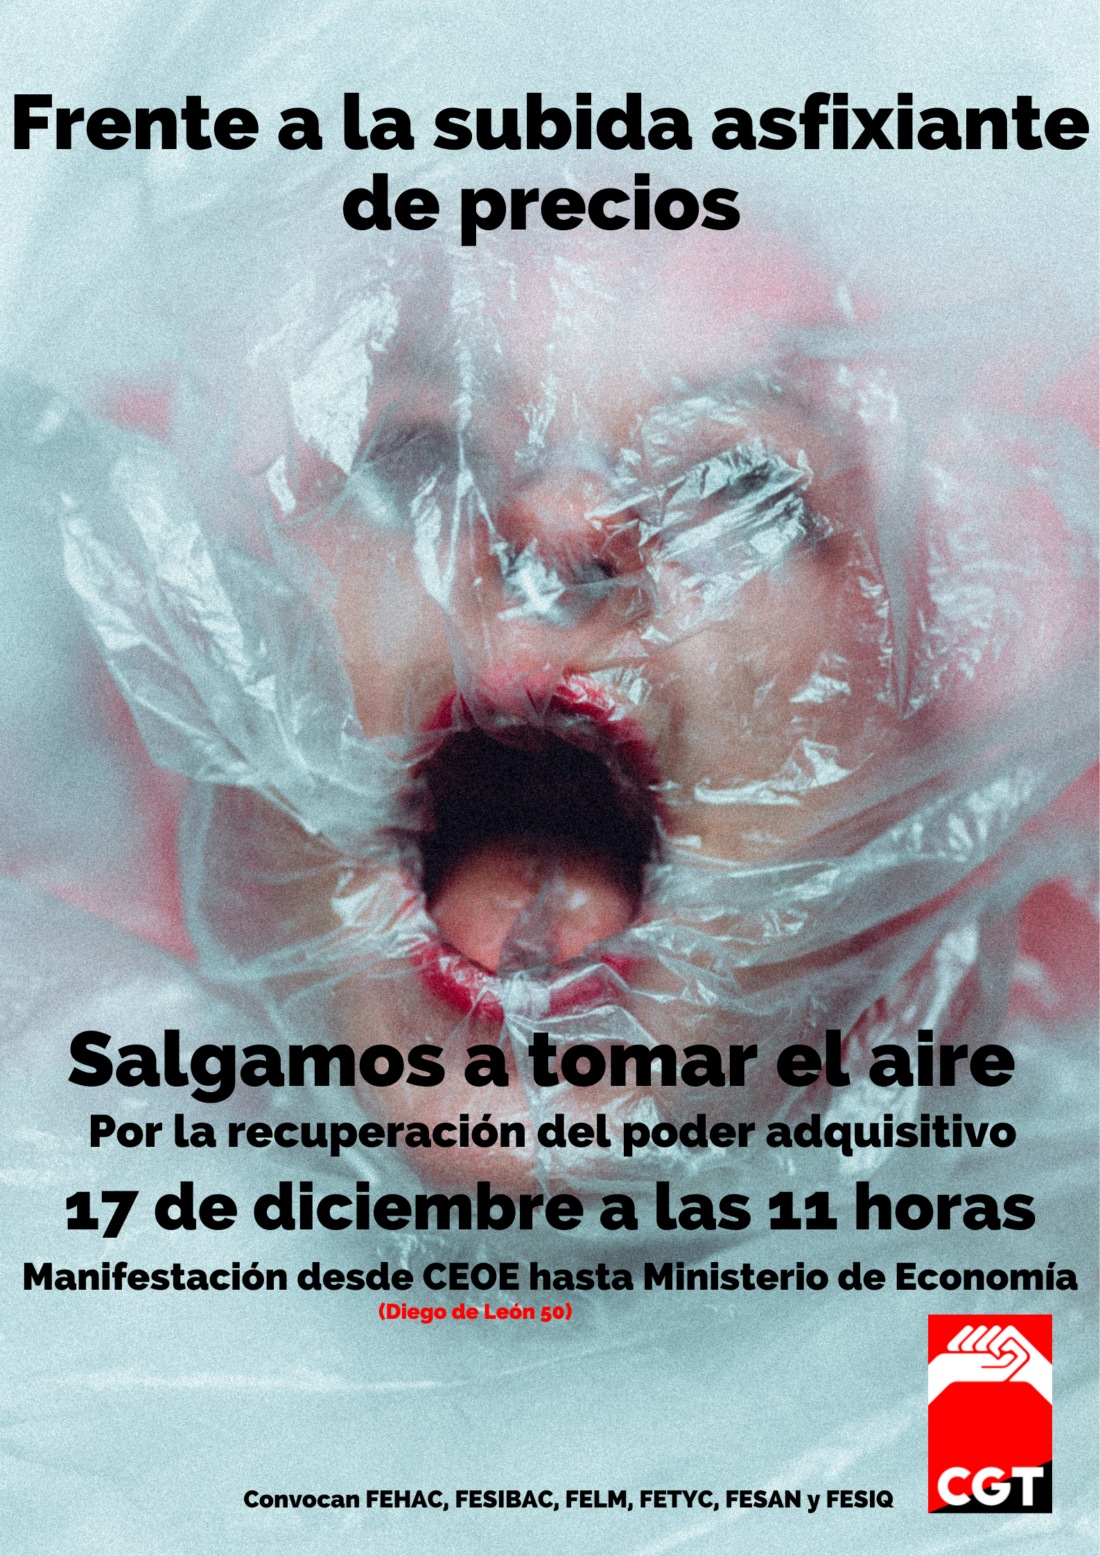 Federaciones de Industria de la CGT convocan una manifestación contra la subida de precios y la devaluación de los salarios el próximo 17 de diciembre en Madrid